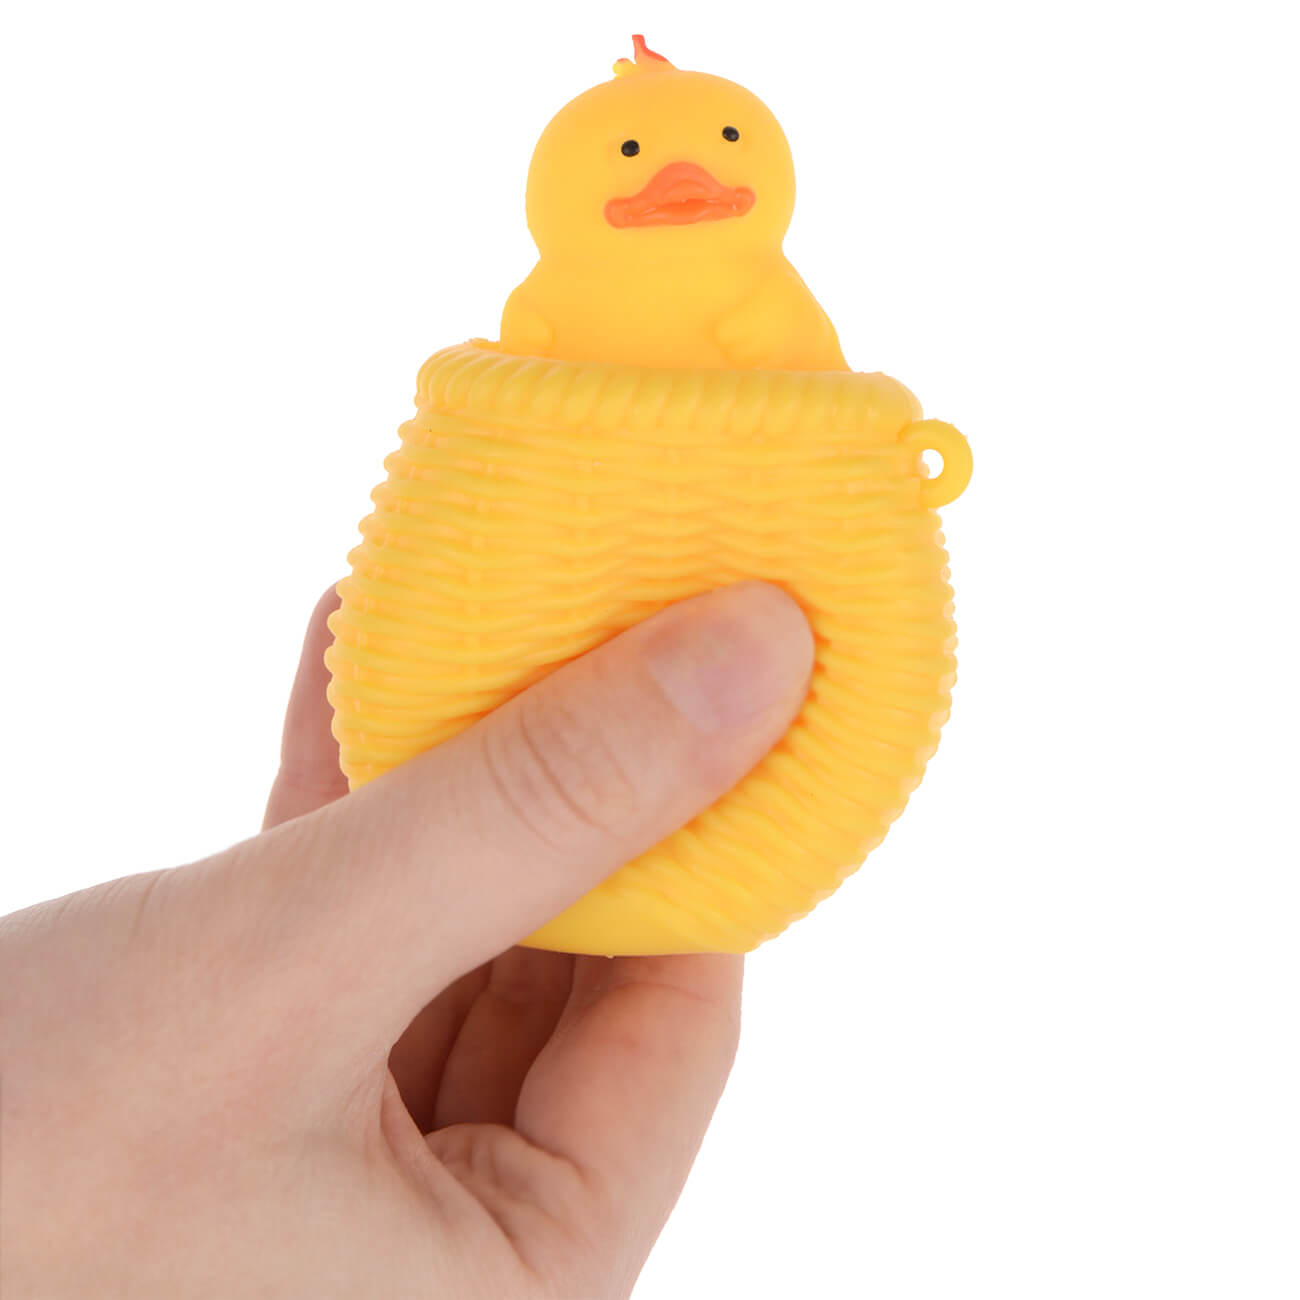 Игрушка-антистресс, 7 см, резина, желтая, Утенок в корзине, Duck